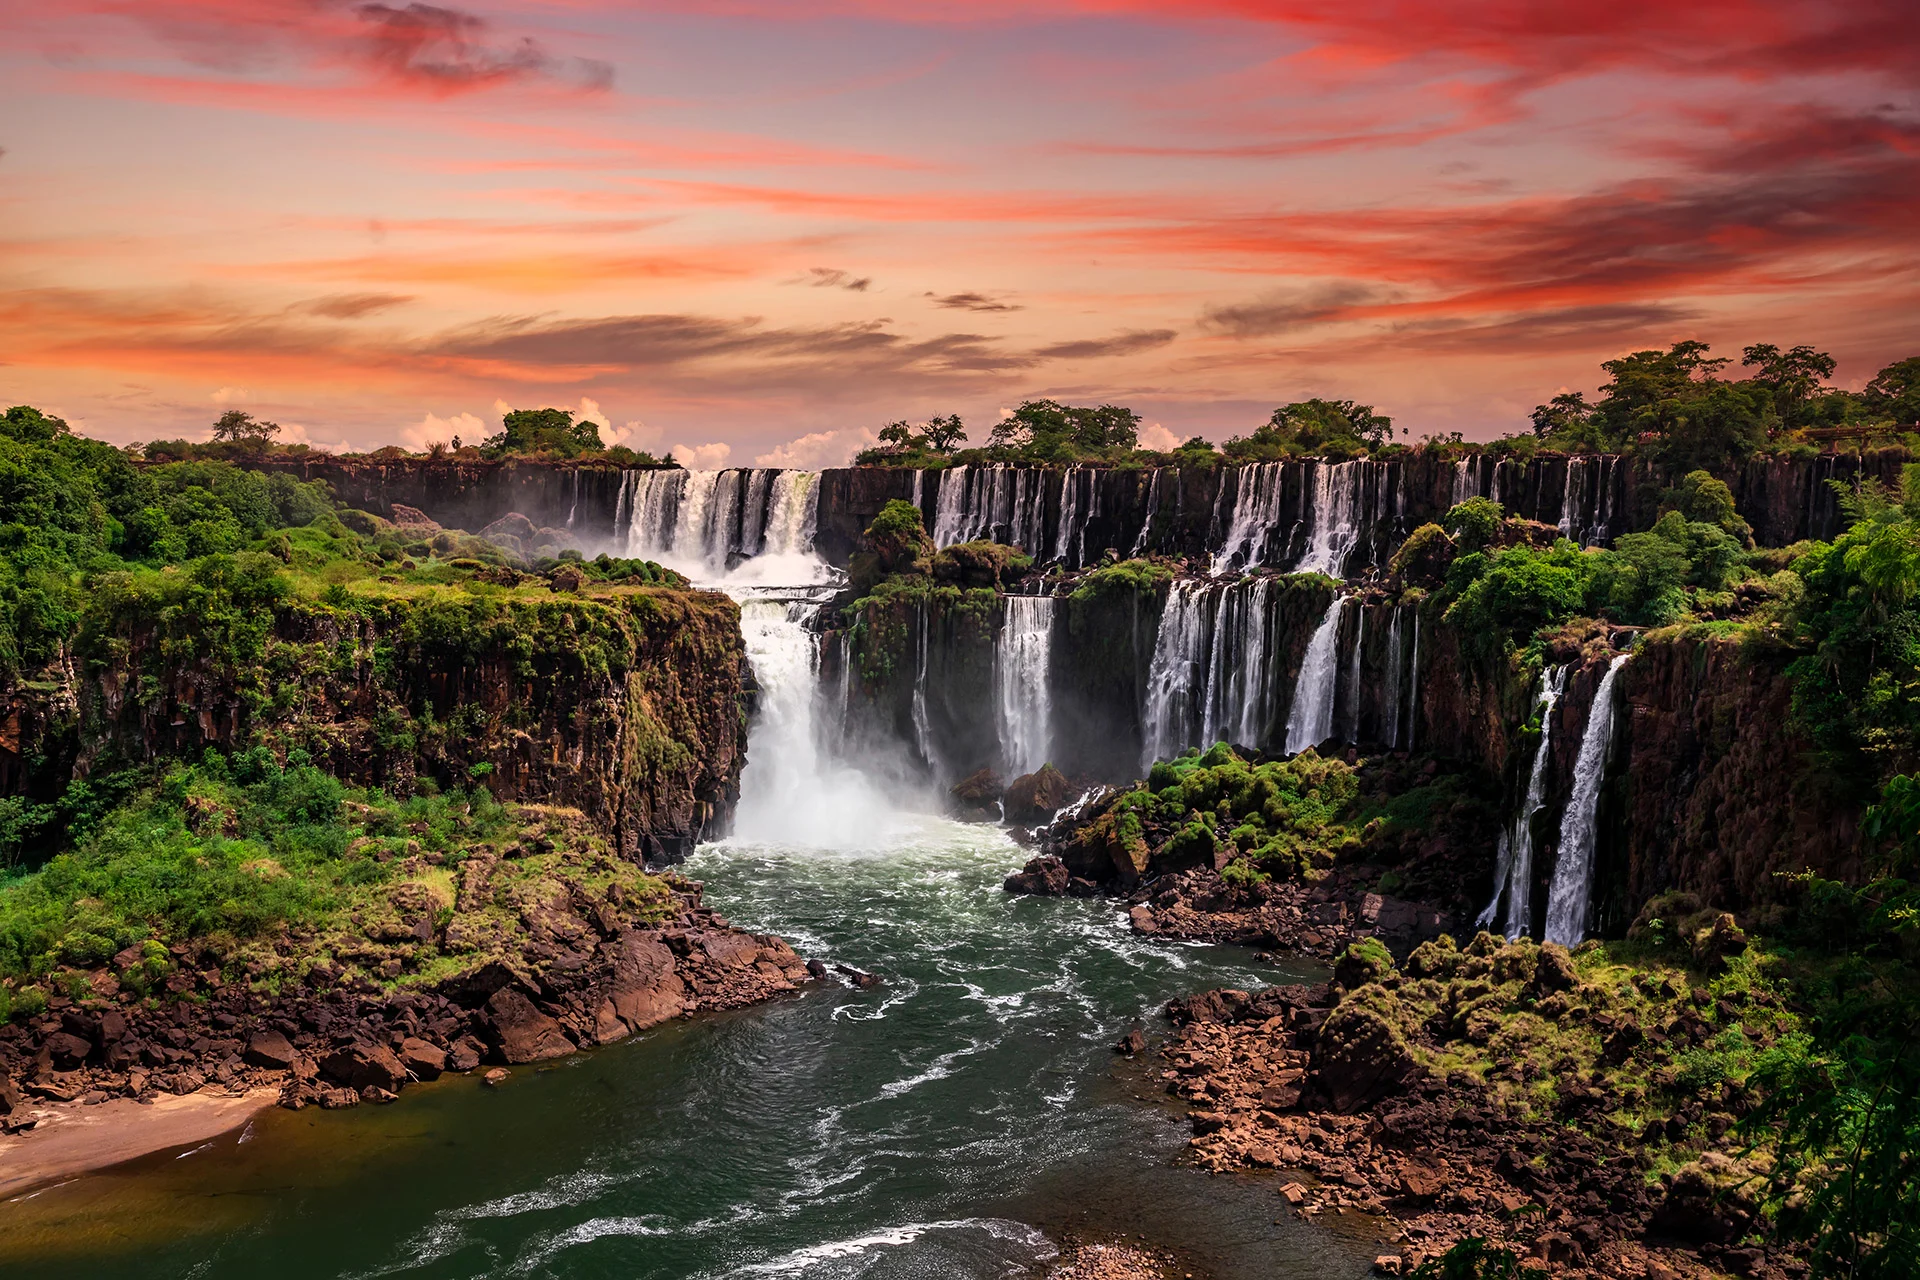 Iguazu Falls Anton Petrus/ Moment/ GETTY